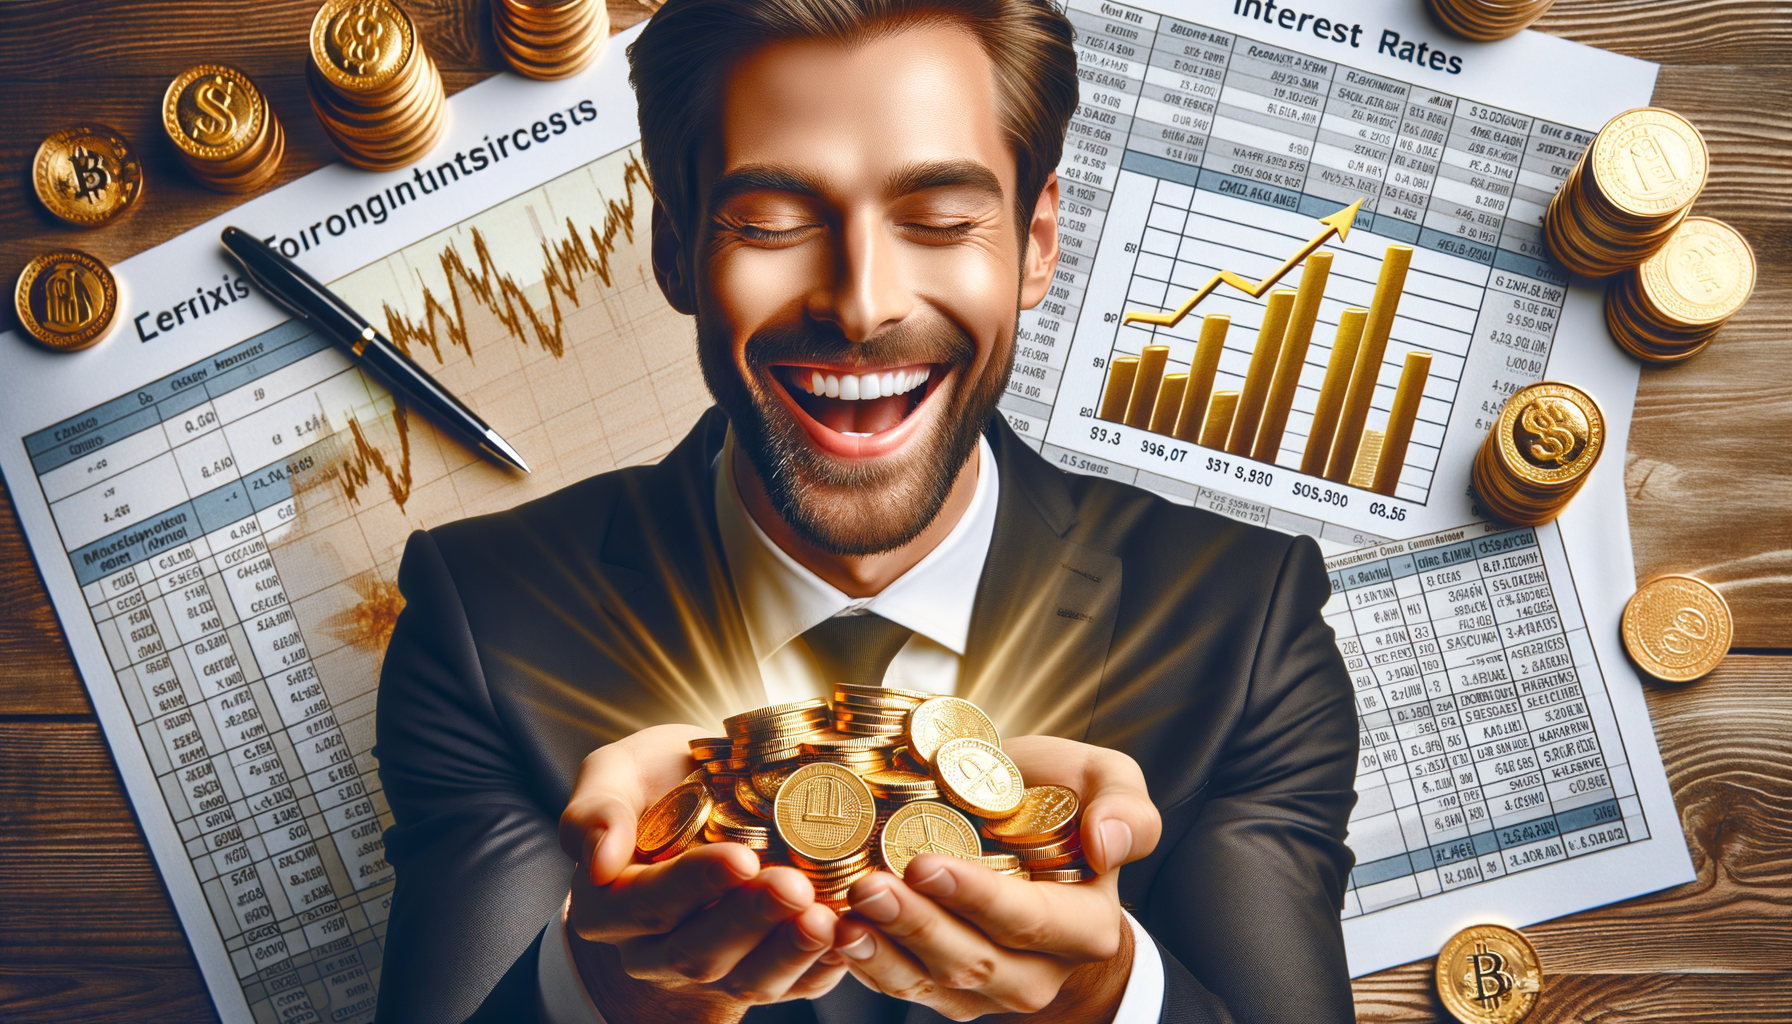 Ein Bild von einem glücklichen Investor, der Goldmünzen in der Hand hält und Finanzdokumente mit günstigen Zinssätzen im Hintergrund